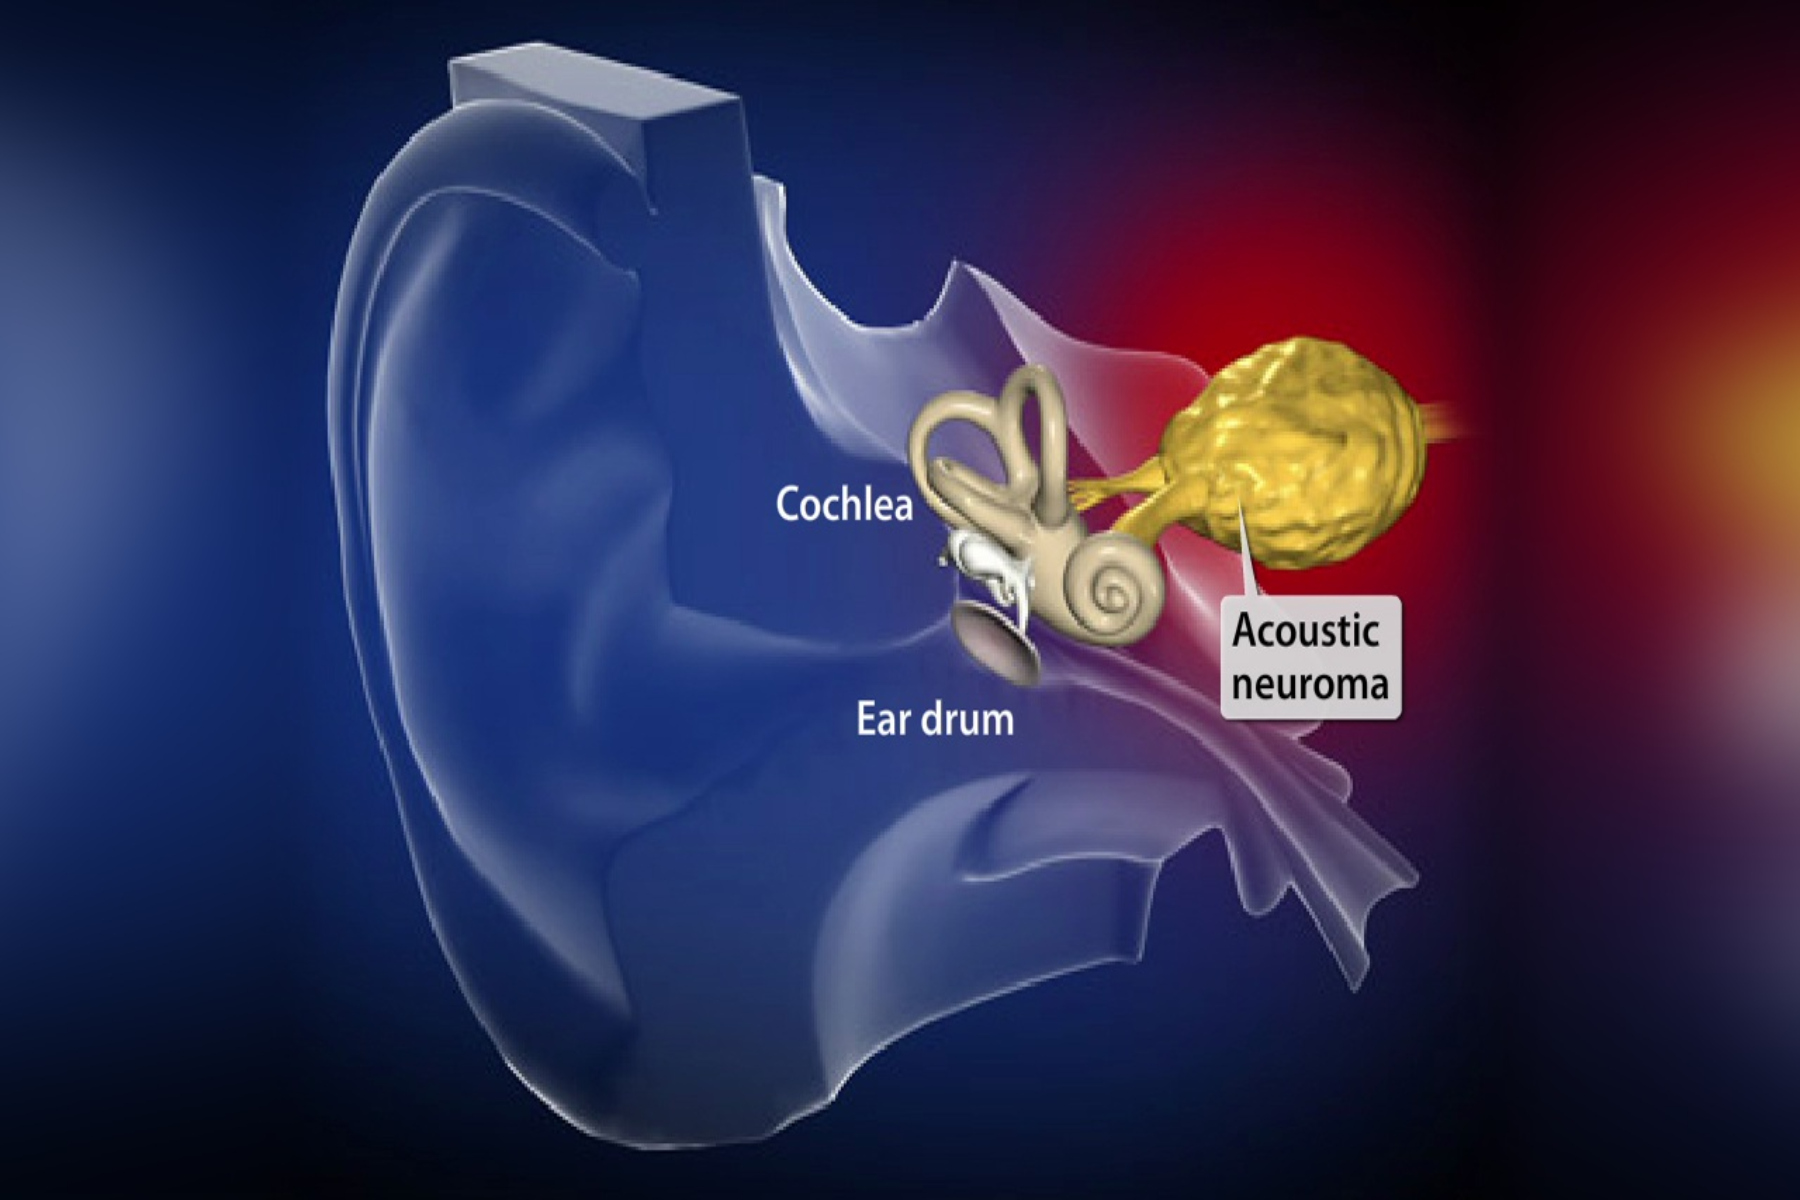 Ακουστικό νευρίνωμα: Πώς δημιουργείται ο καλοήθης πρωτοπαθής ενδοκράνιος όγκος;